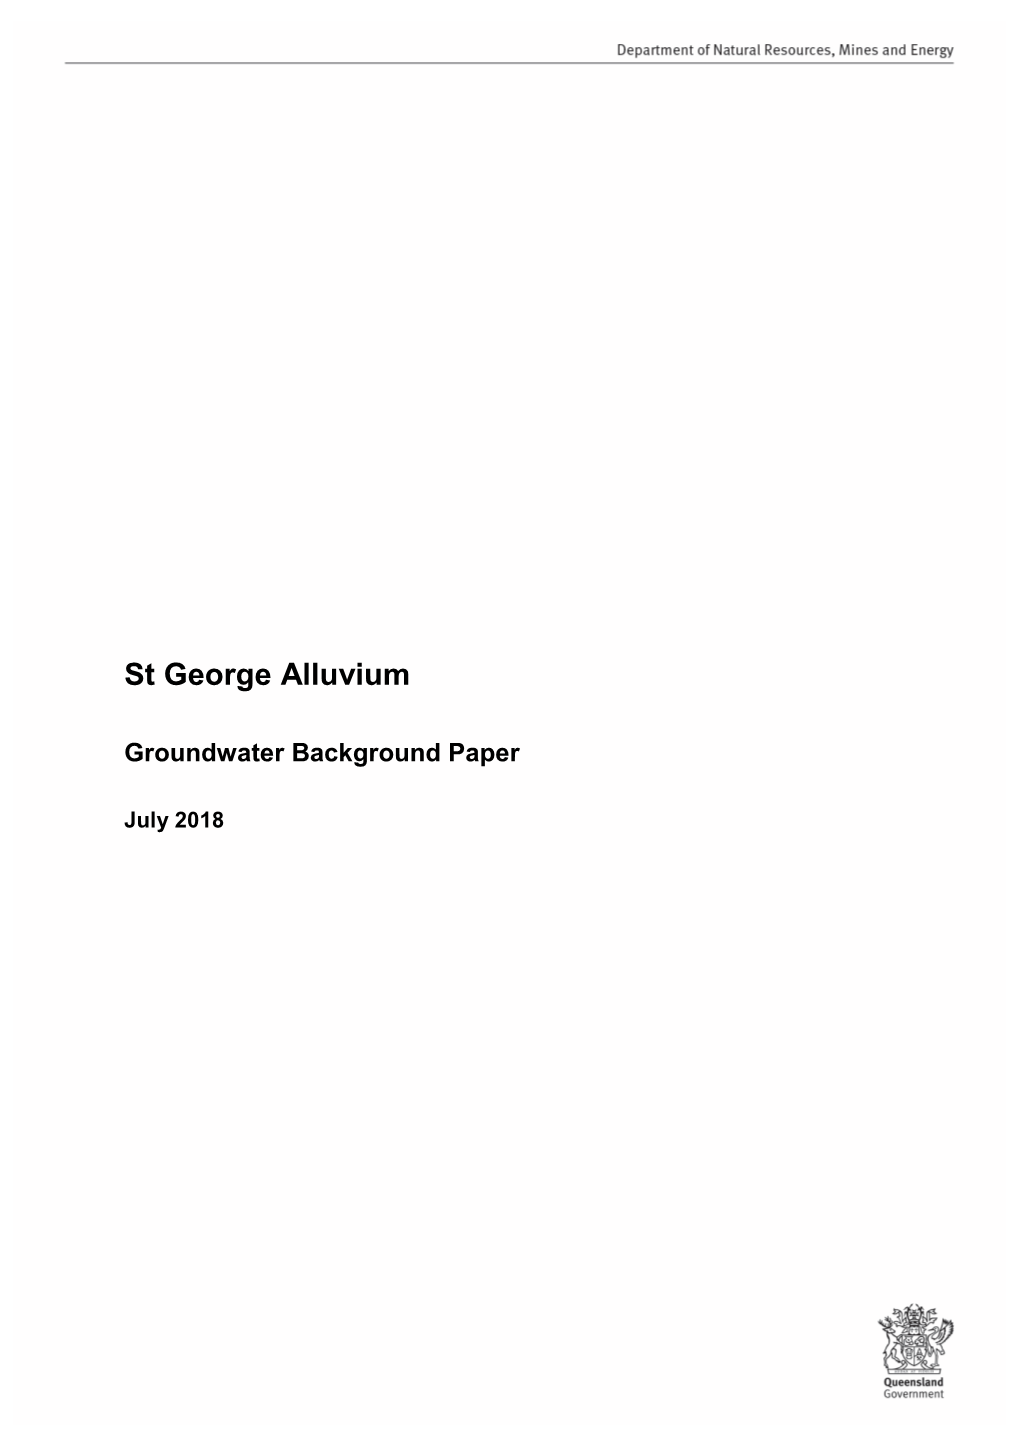 St George Alluvium